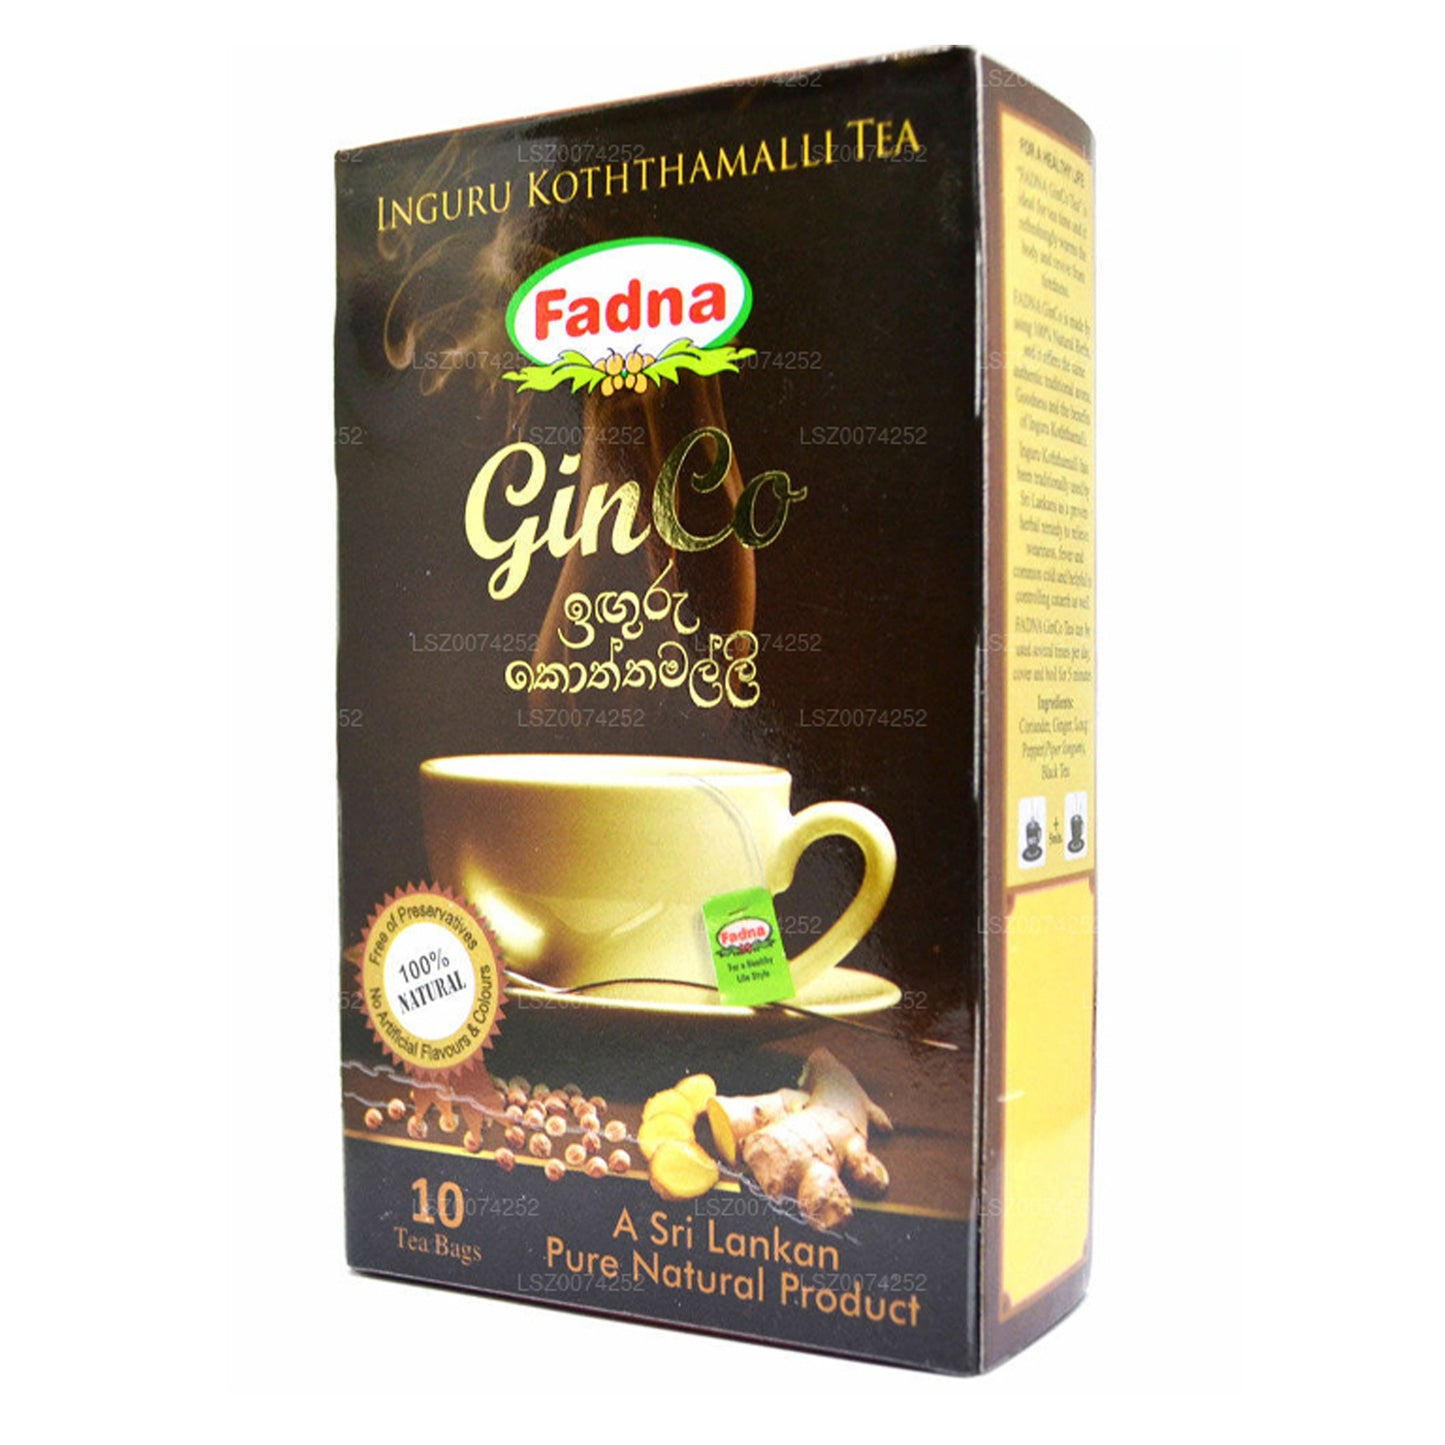 Fadna ingefära och koriander smaksatt te (20g) 10 tepåsar